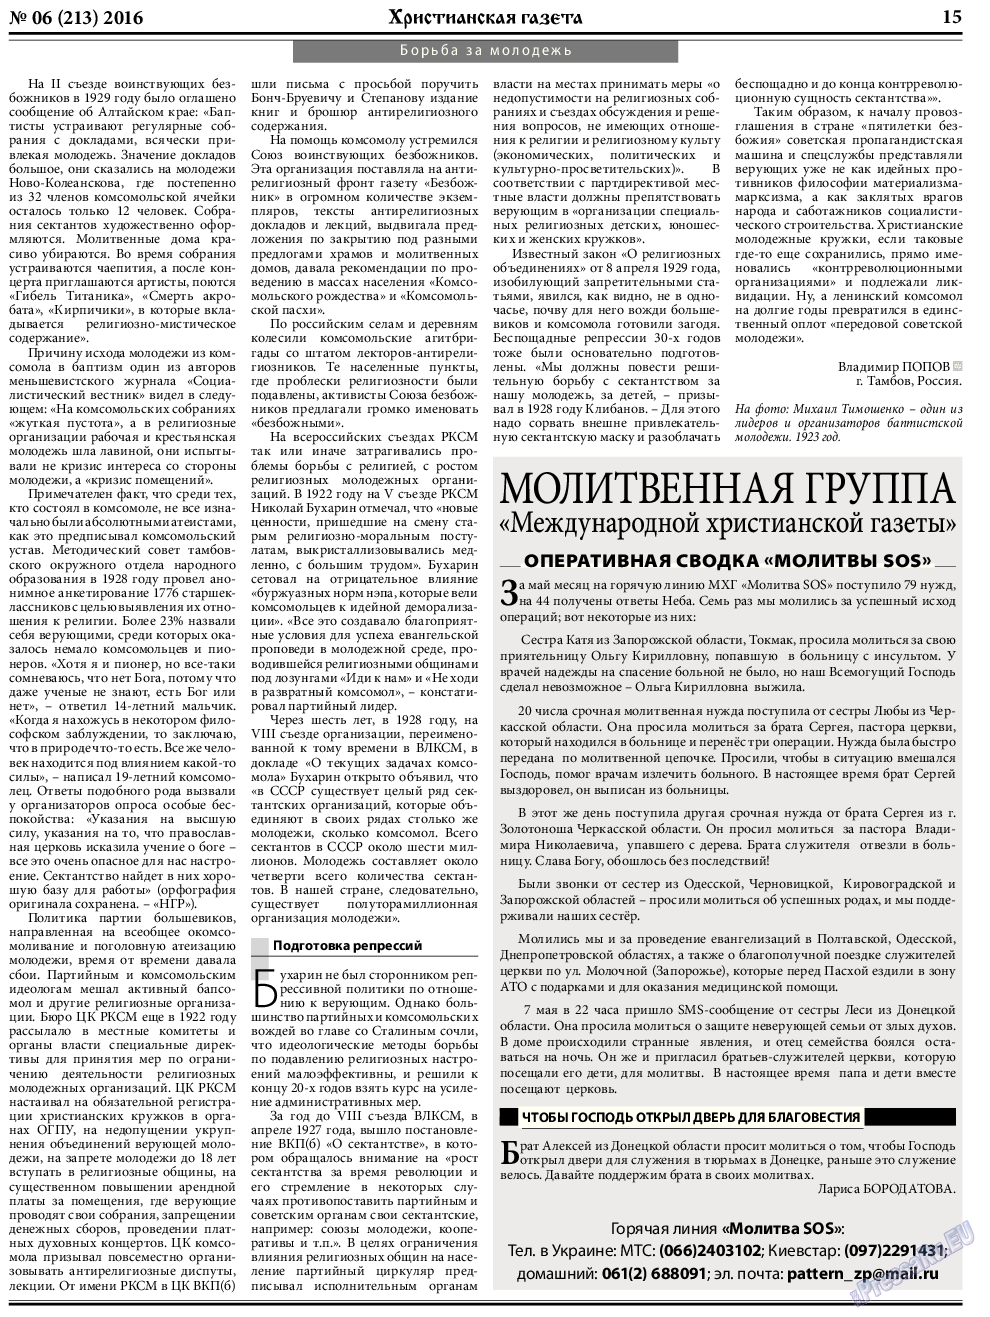 Христианская газета, газета. 2016 №6 стр.23